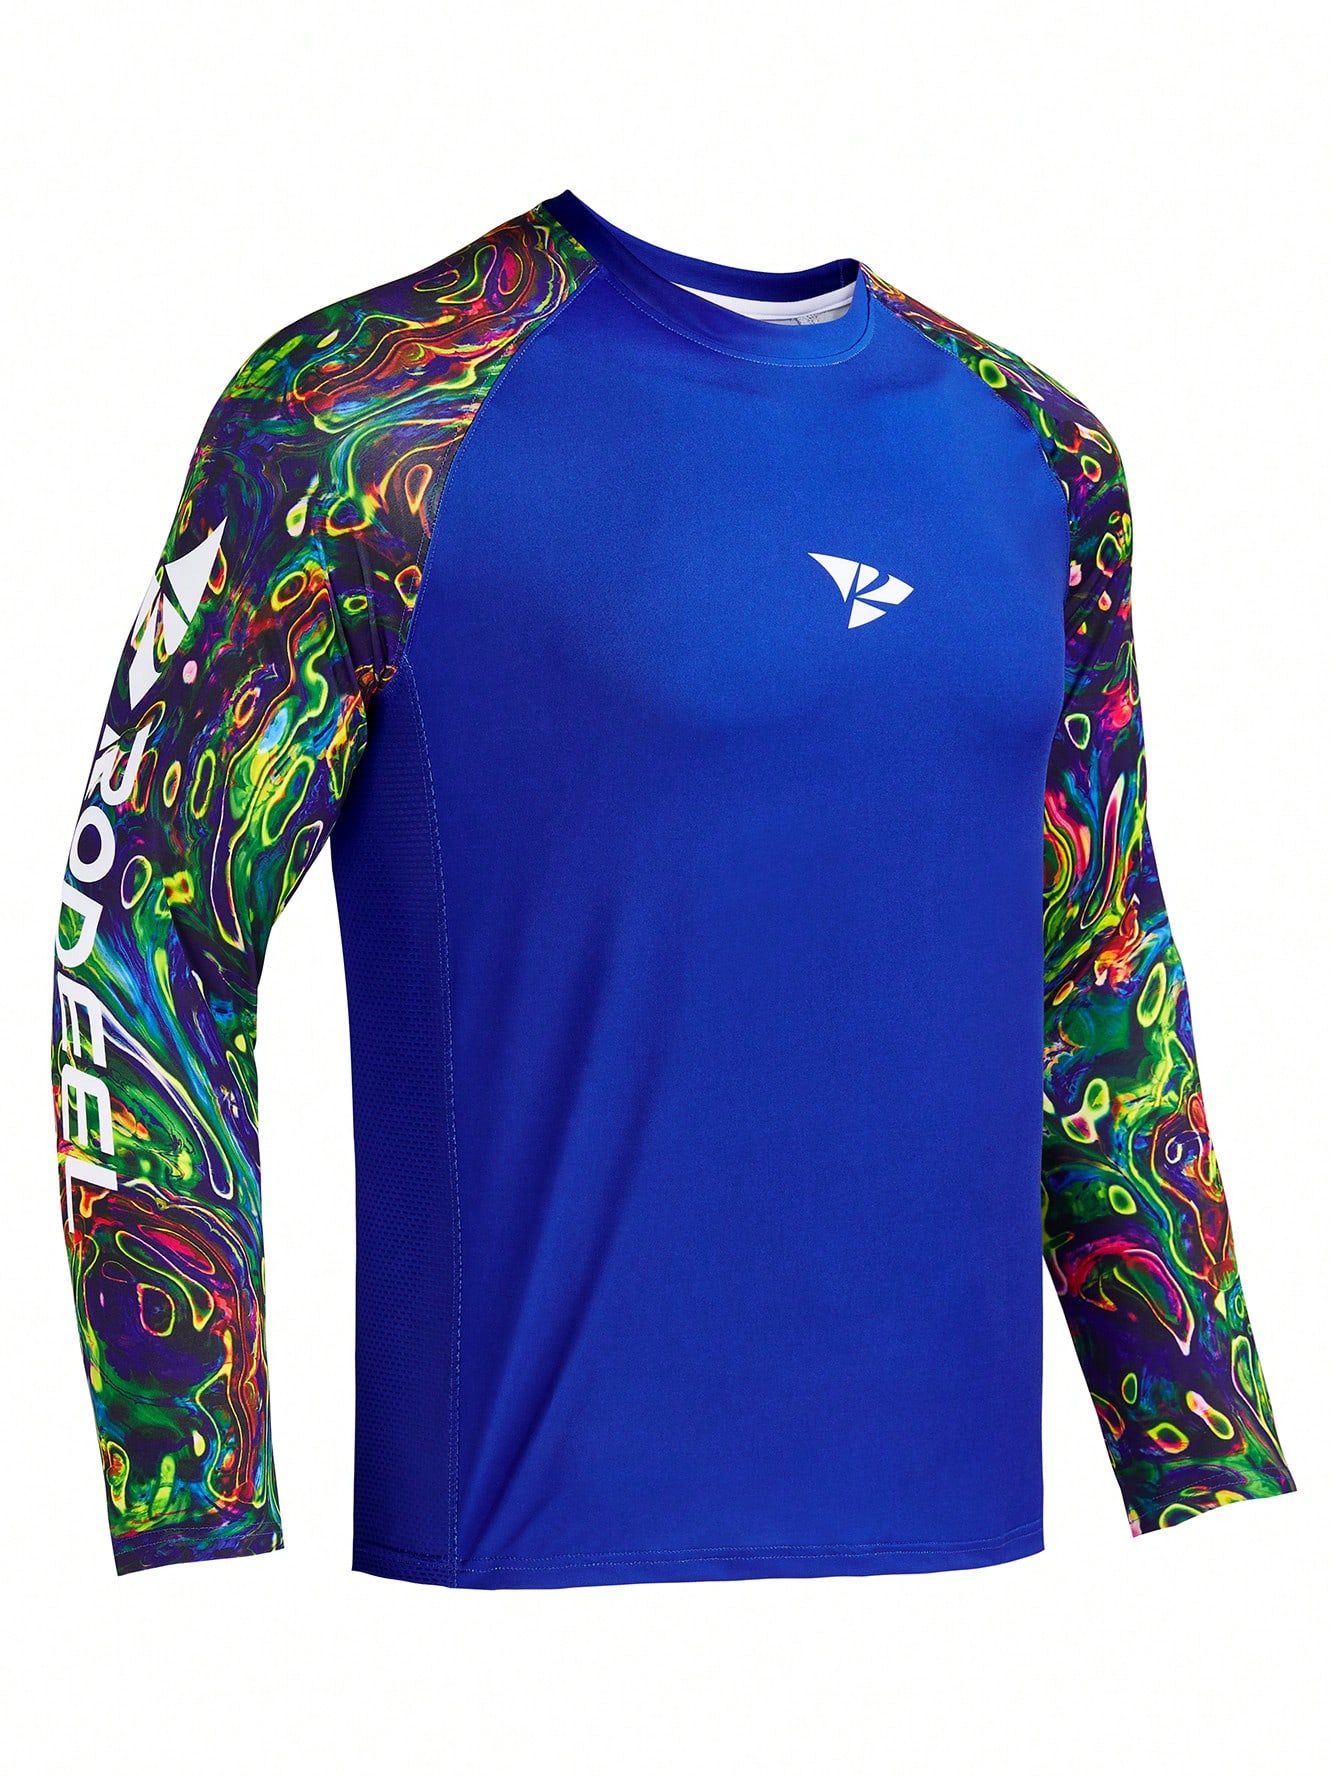 RODEEL Мужская рубашка с защитой от солнца, темно-синий новинка 2021 походные и рыболовные рубашки gamakatsu спортивная быстросохнущая мужская одежда для рыбалки одежда для велоспорта и рыбалки